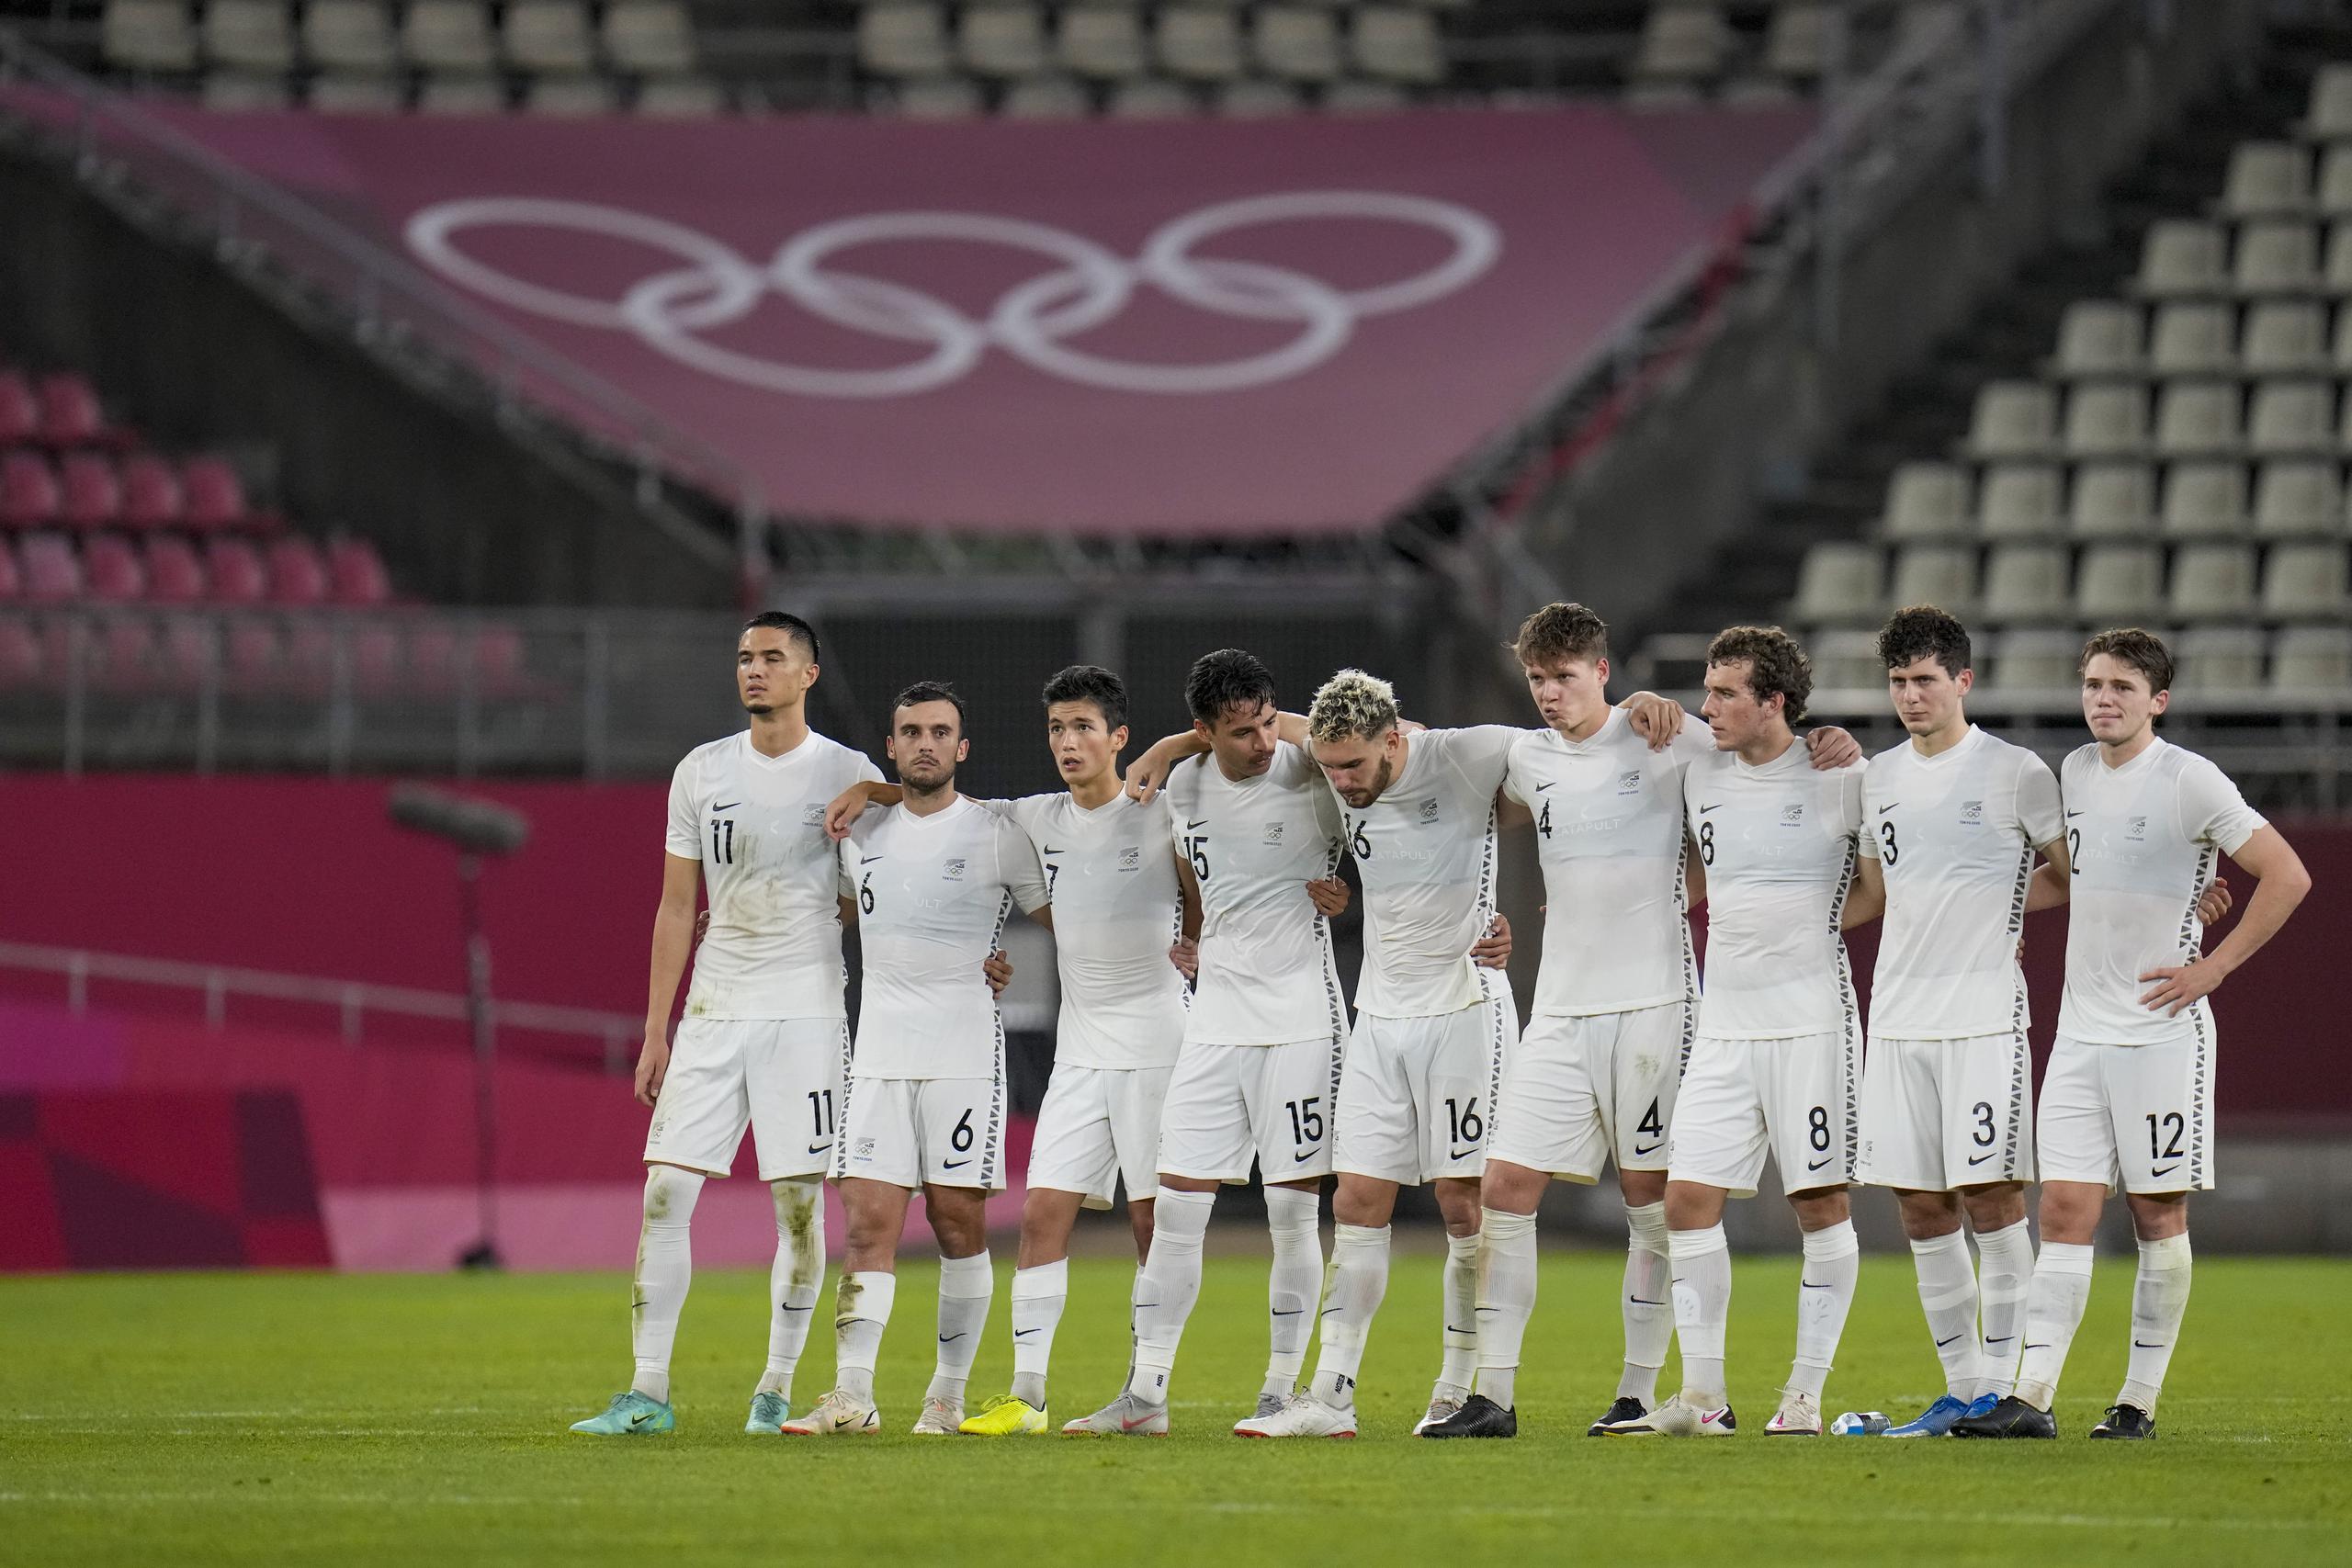 Los jugadores de la selección de Nueva Zelanda, posan con sus uniformes todo blanco, durante la tanda de penales en el partido contra Japón por los cuartos de final del fútbol masculino de los Juegos Olímpicos de Tokio.